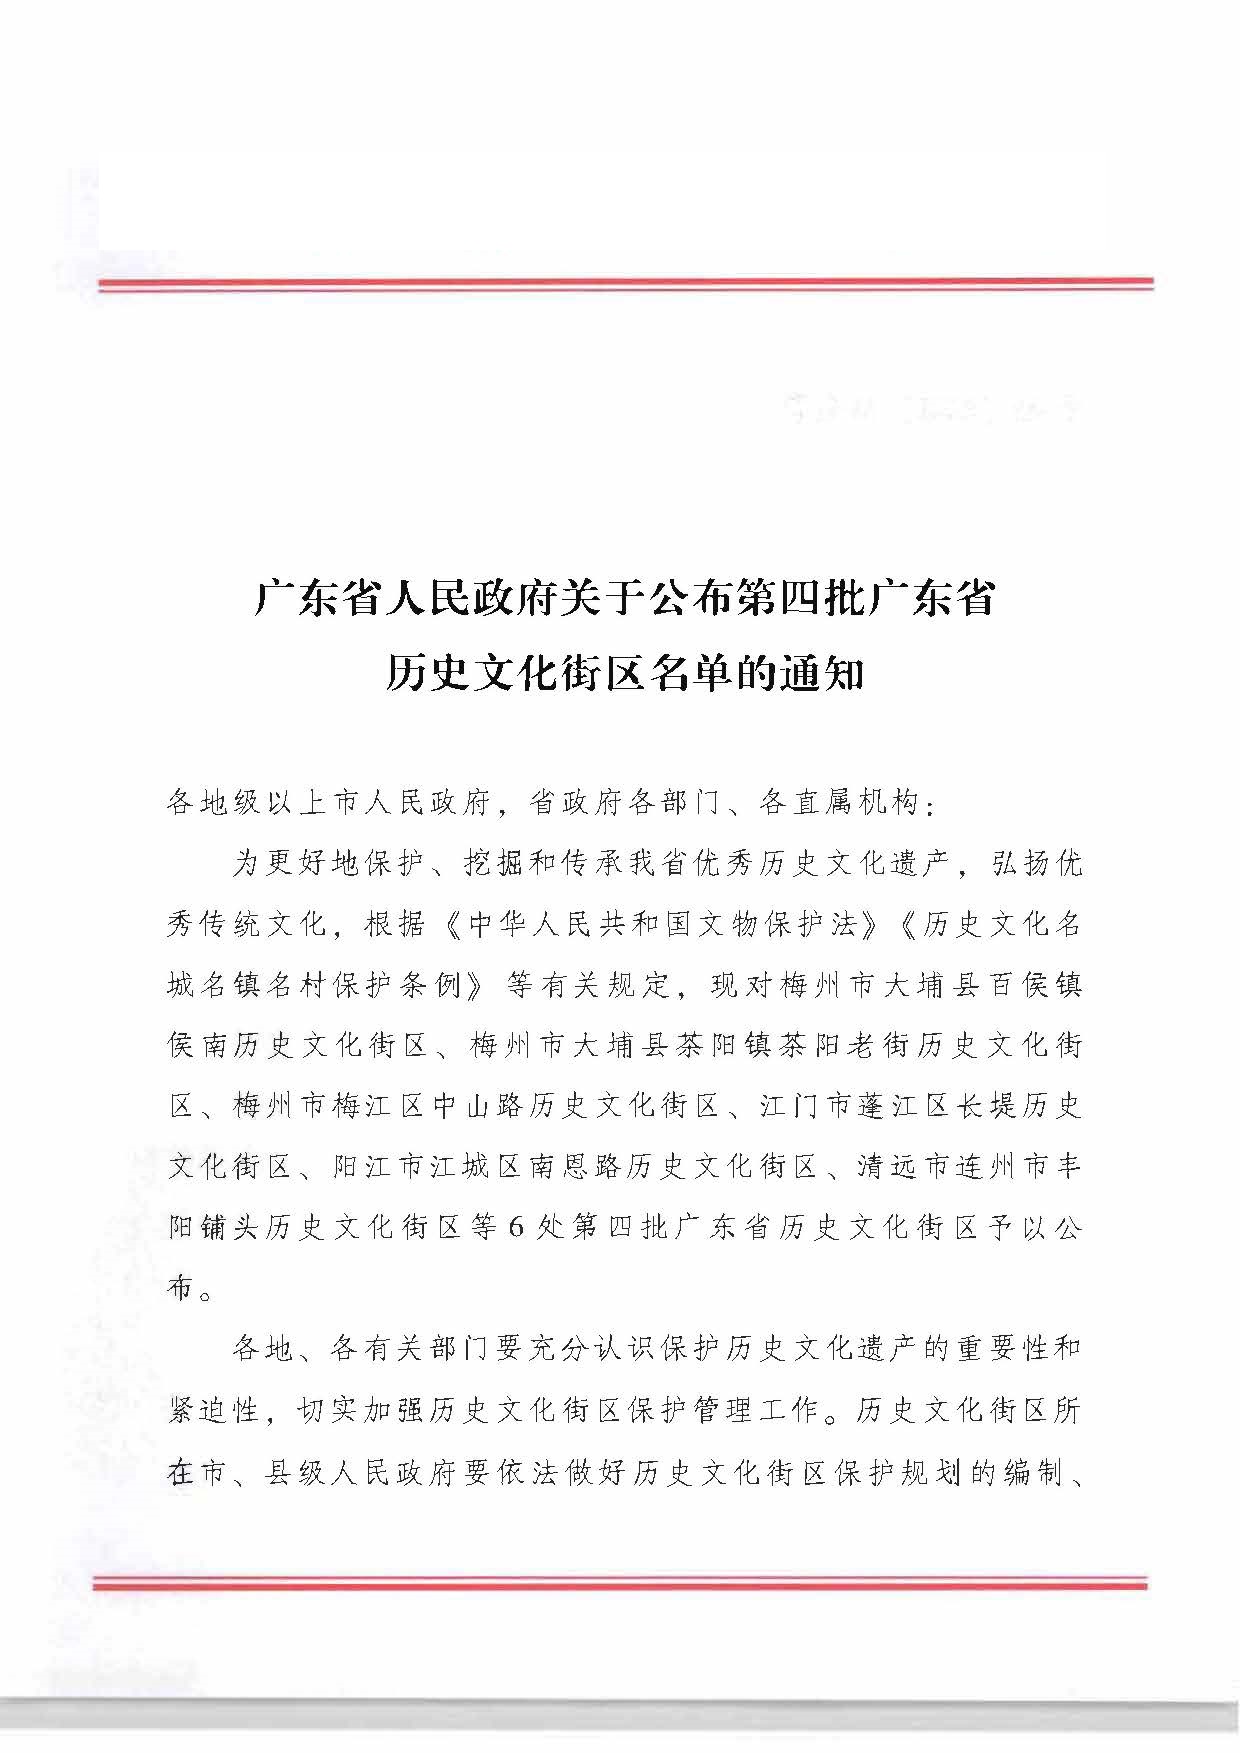 广东省人民政府关于公布第四批广东省历史文化街区名单的通知_页面_4_页面_1.jpg